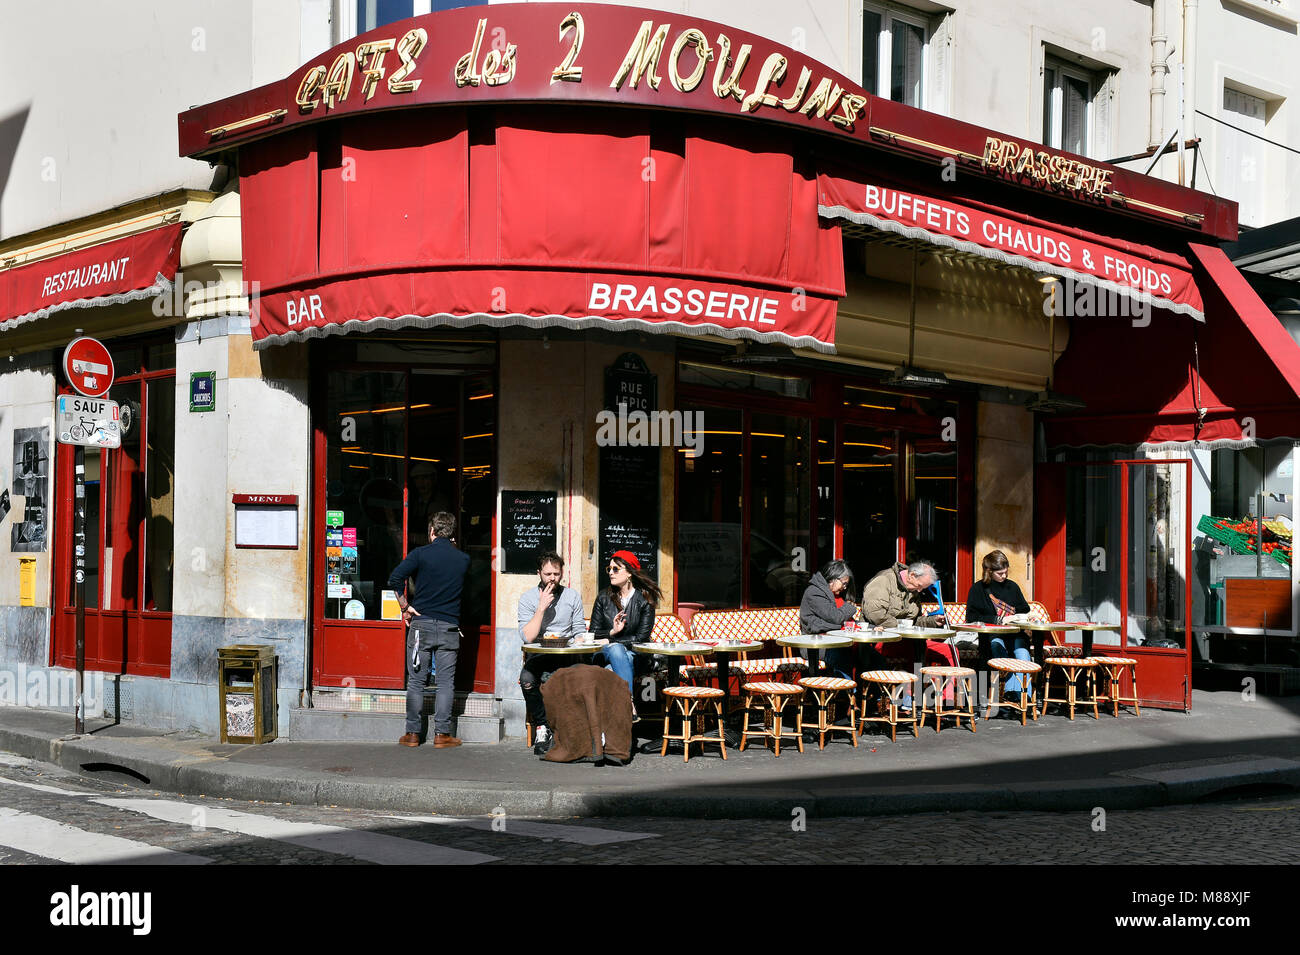 Café des 2 Moulins, rue Lepic, Montmartre, Paris, France Stock Photo